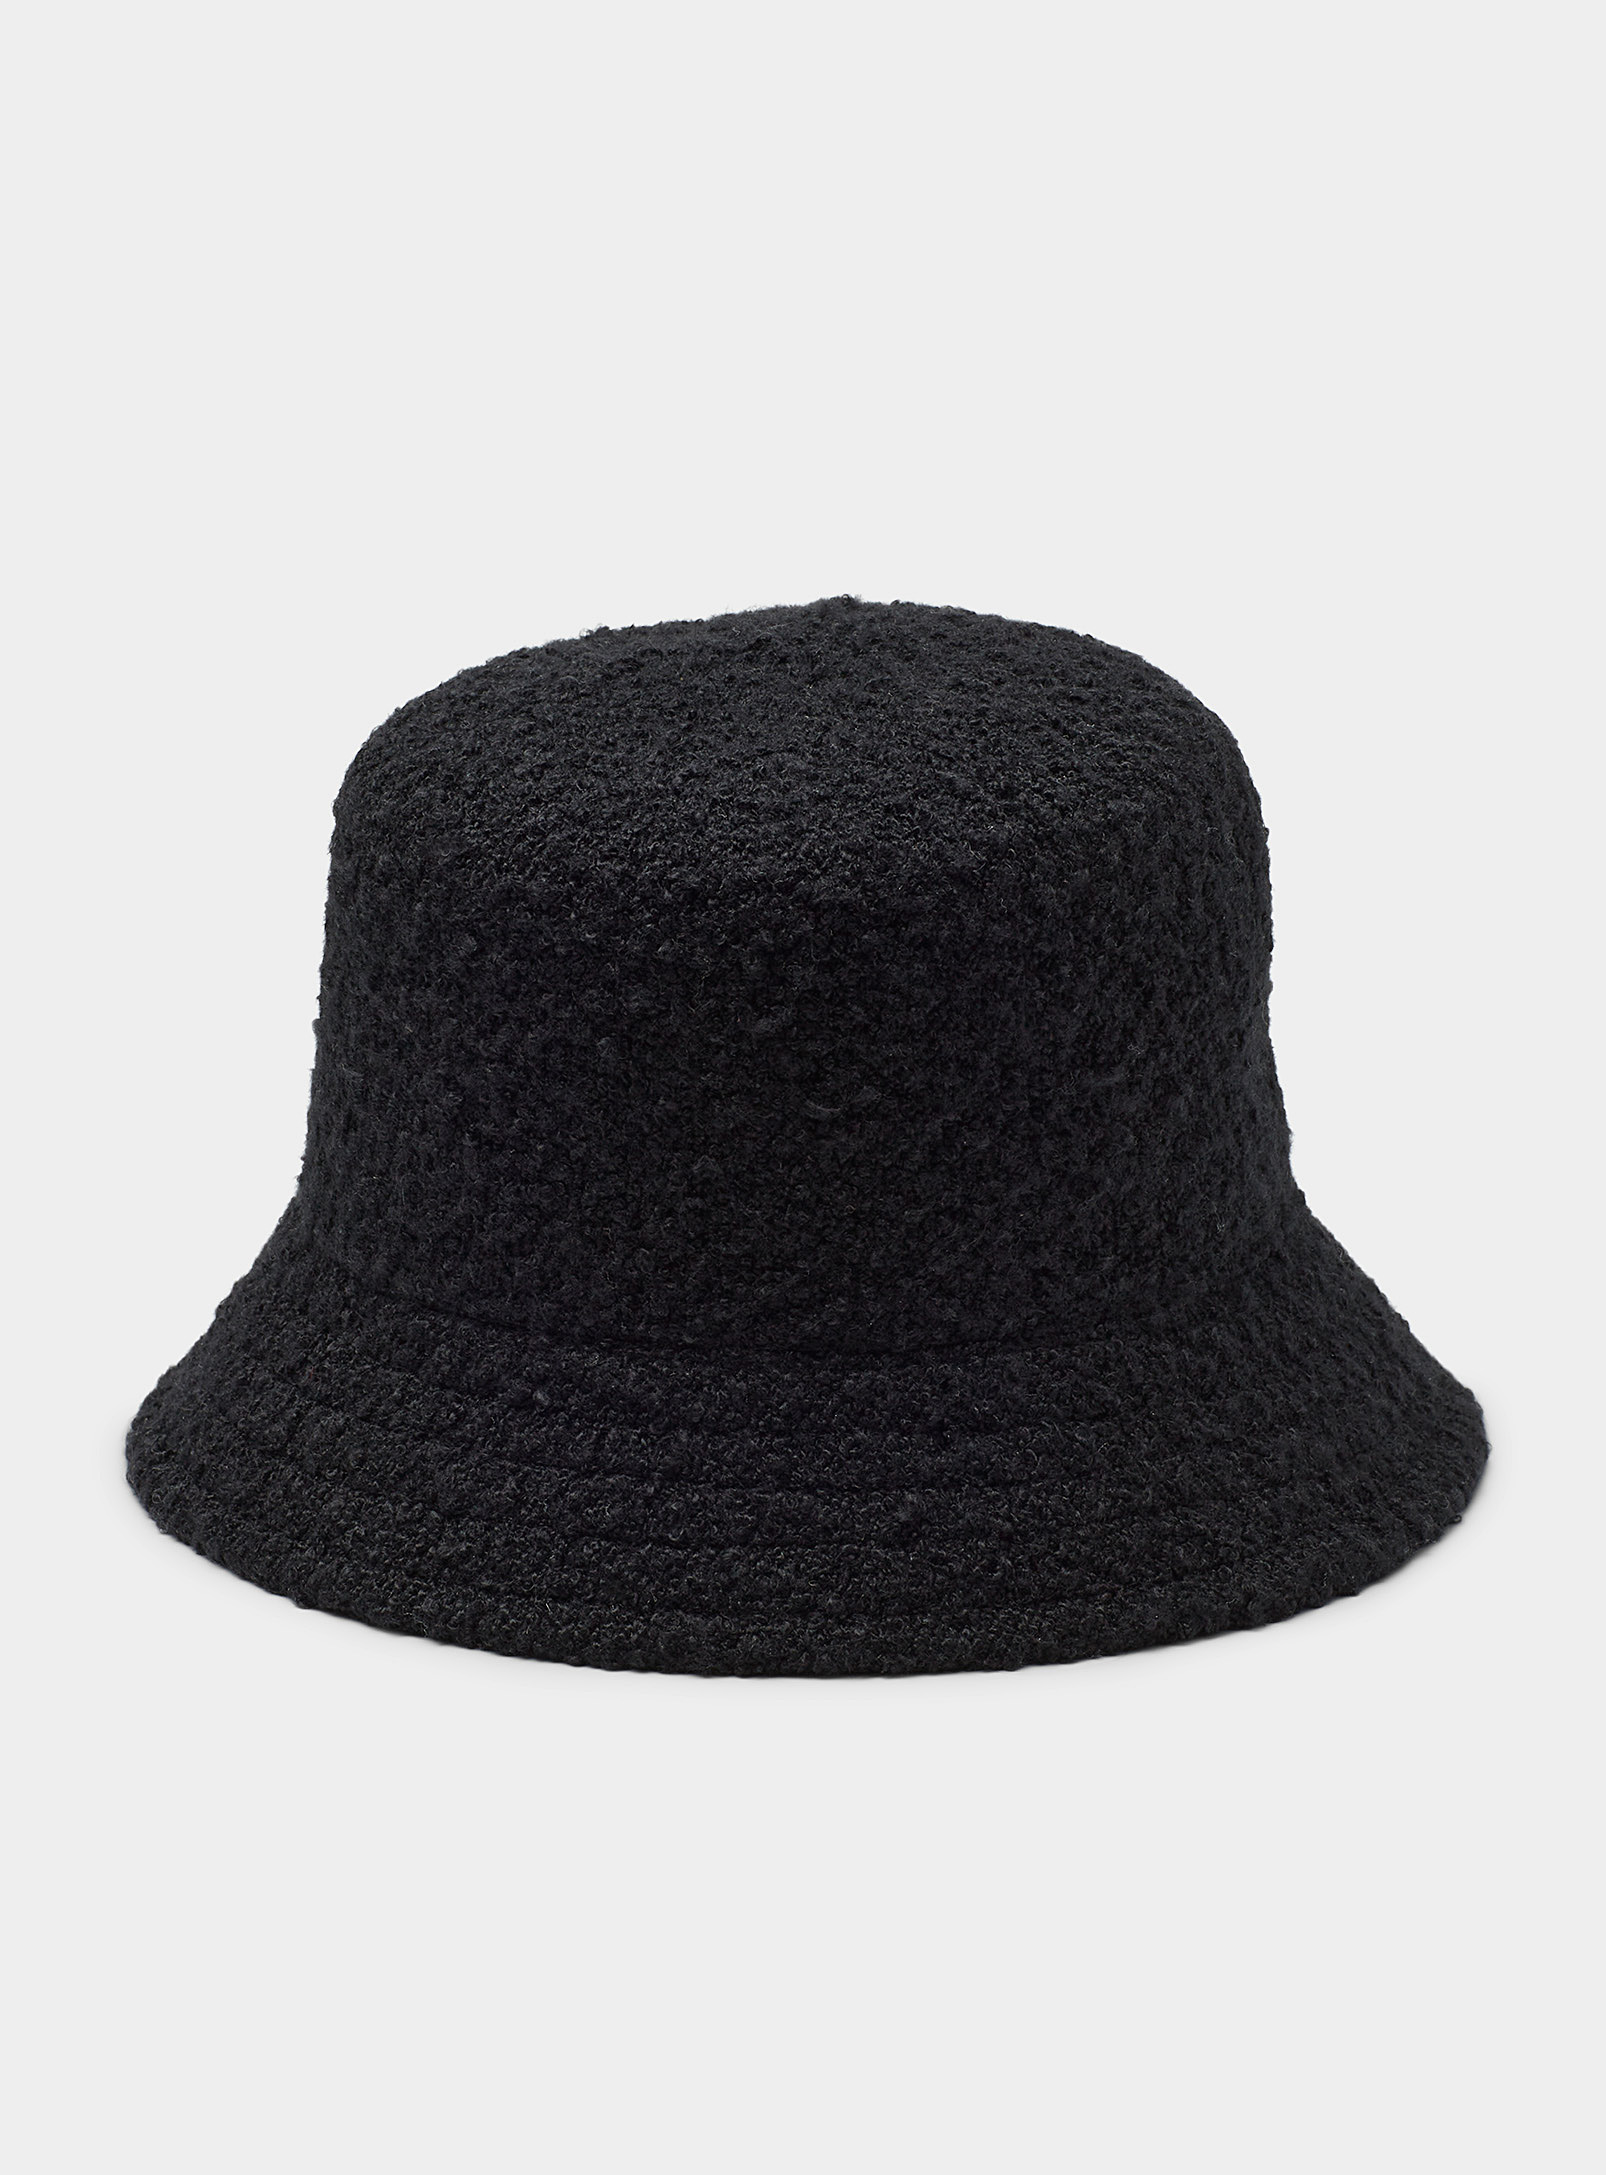 Canadian Hat - Women's Black bouclé cloche